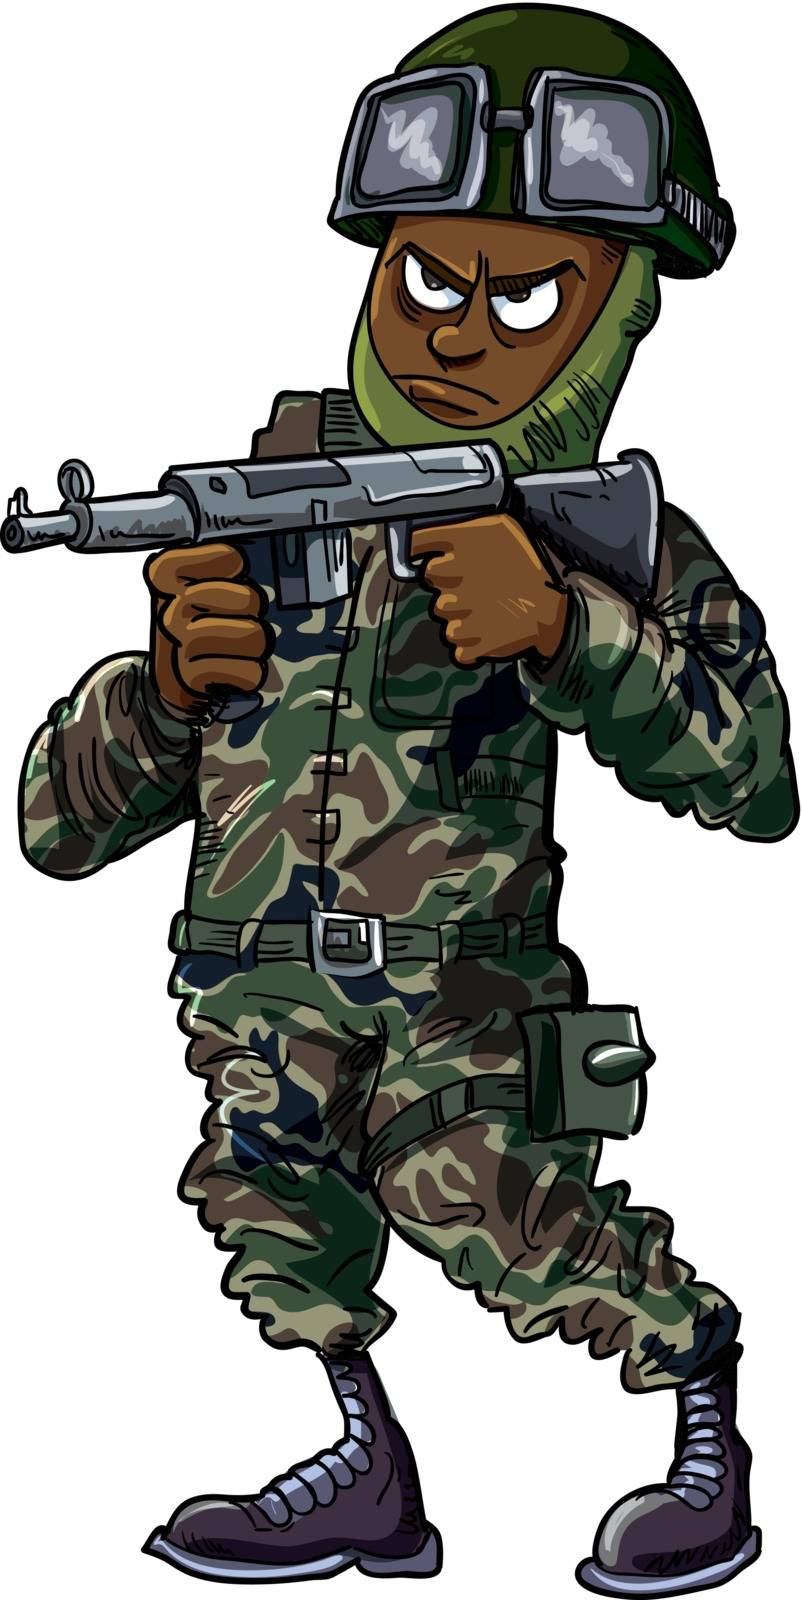 Black cartoon soldier with gun by antonbrand